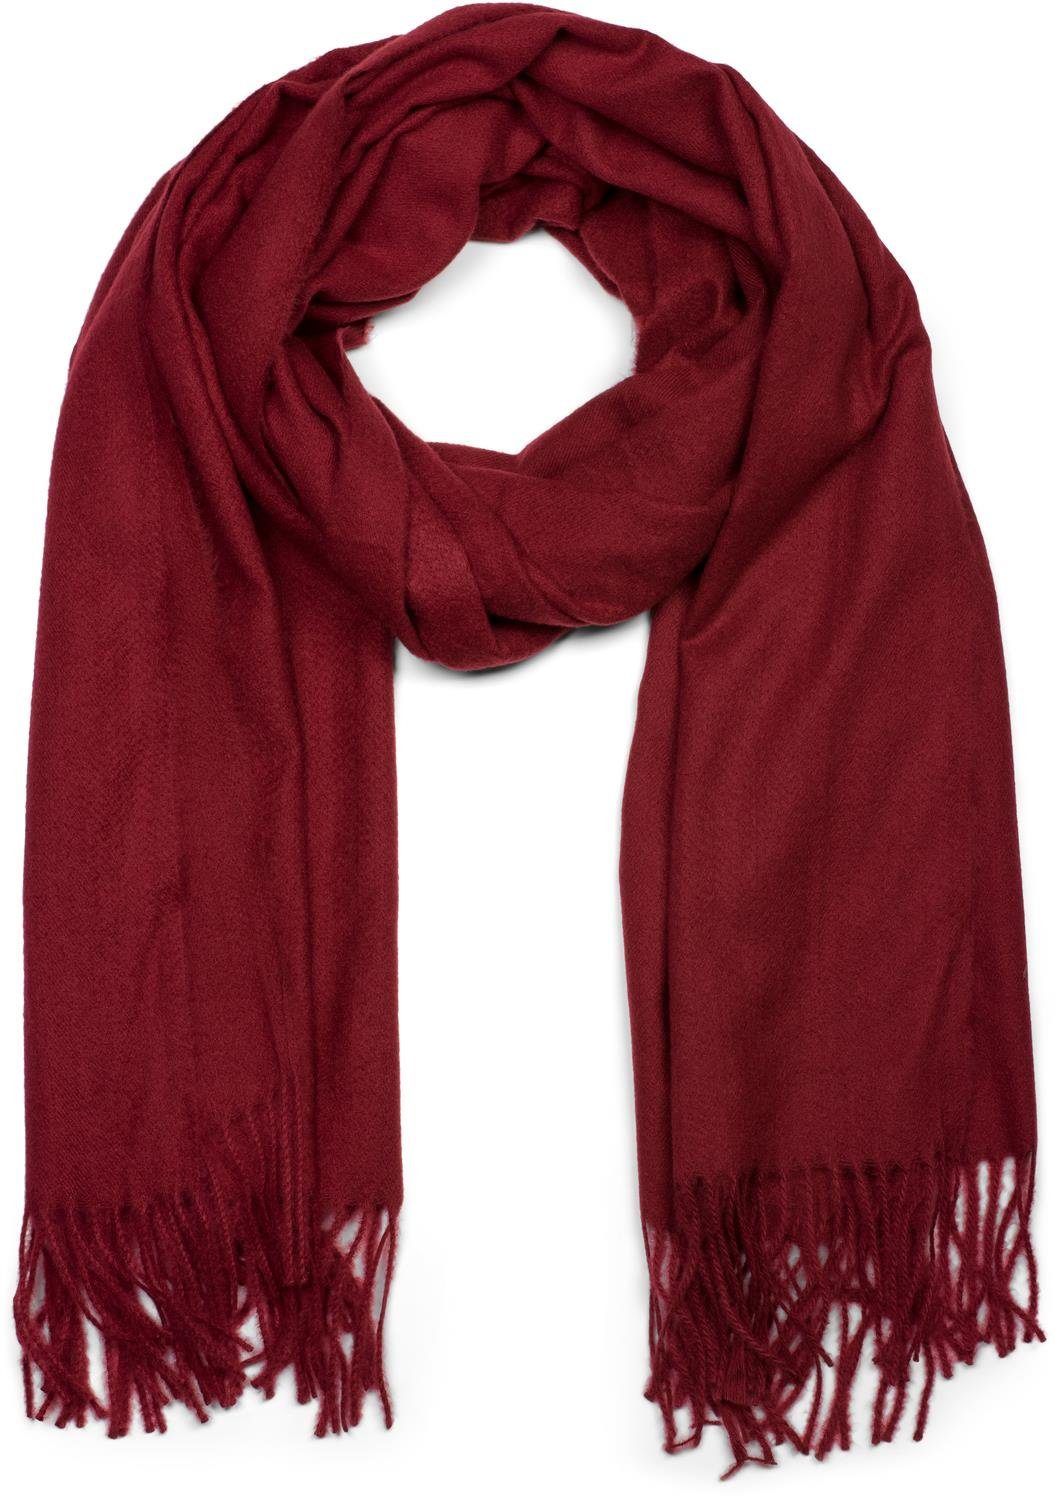 Roter Schal online kaufen | OTTO